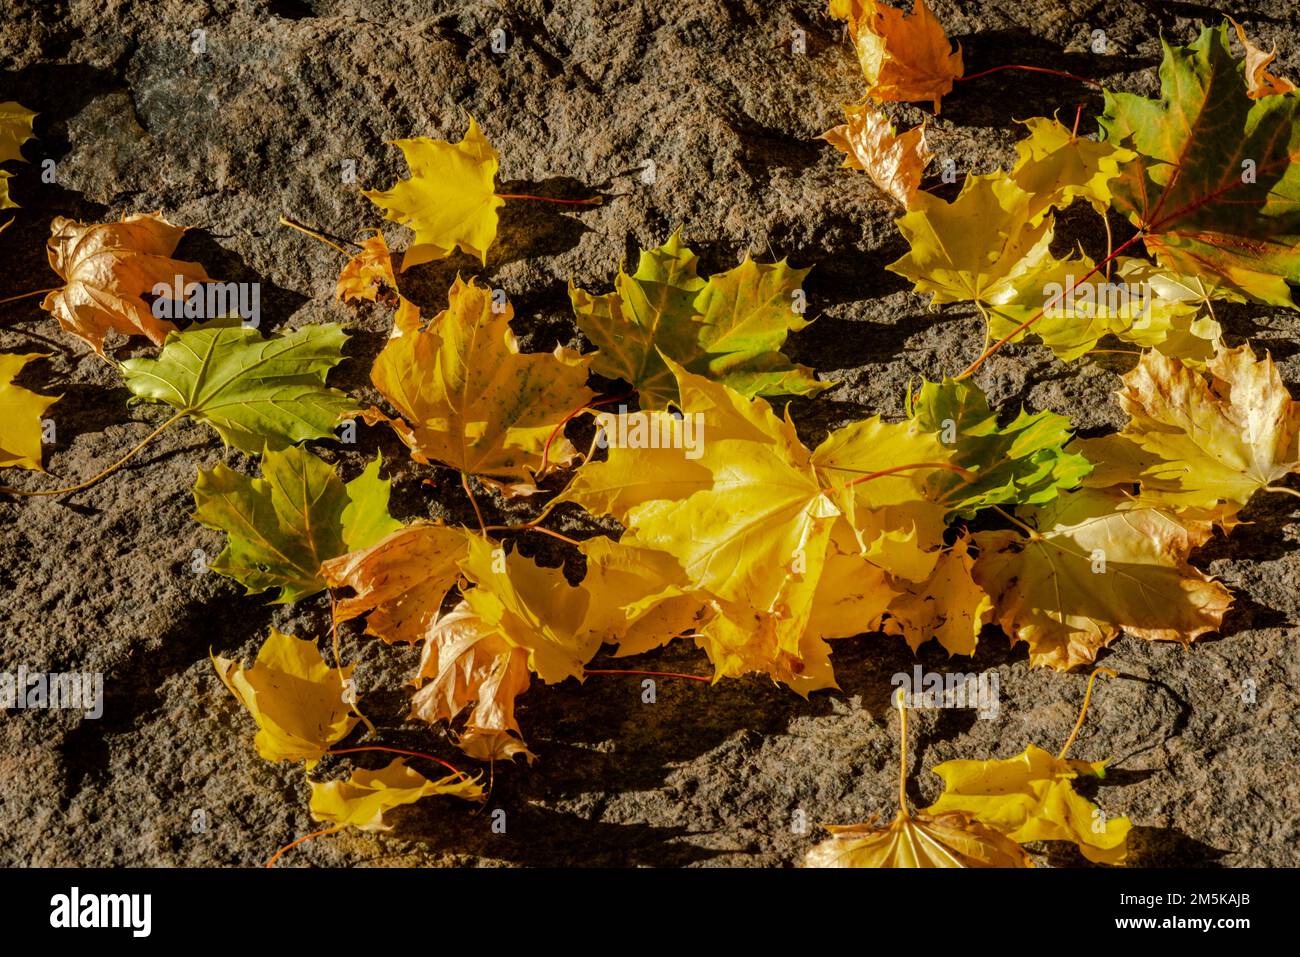 Herbstfarben am St. Lawrence-Fluss Stockfoto